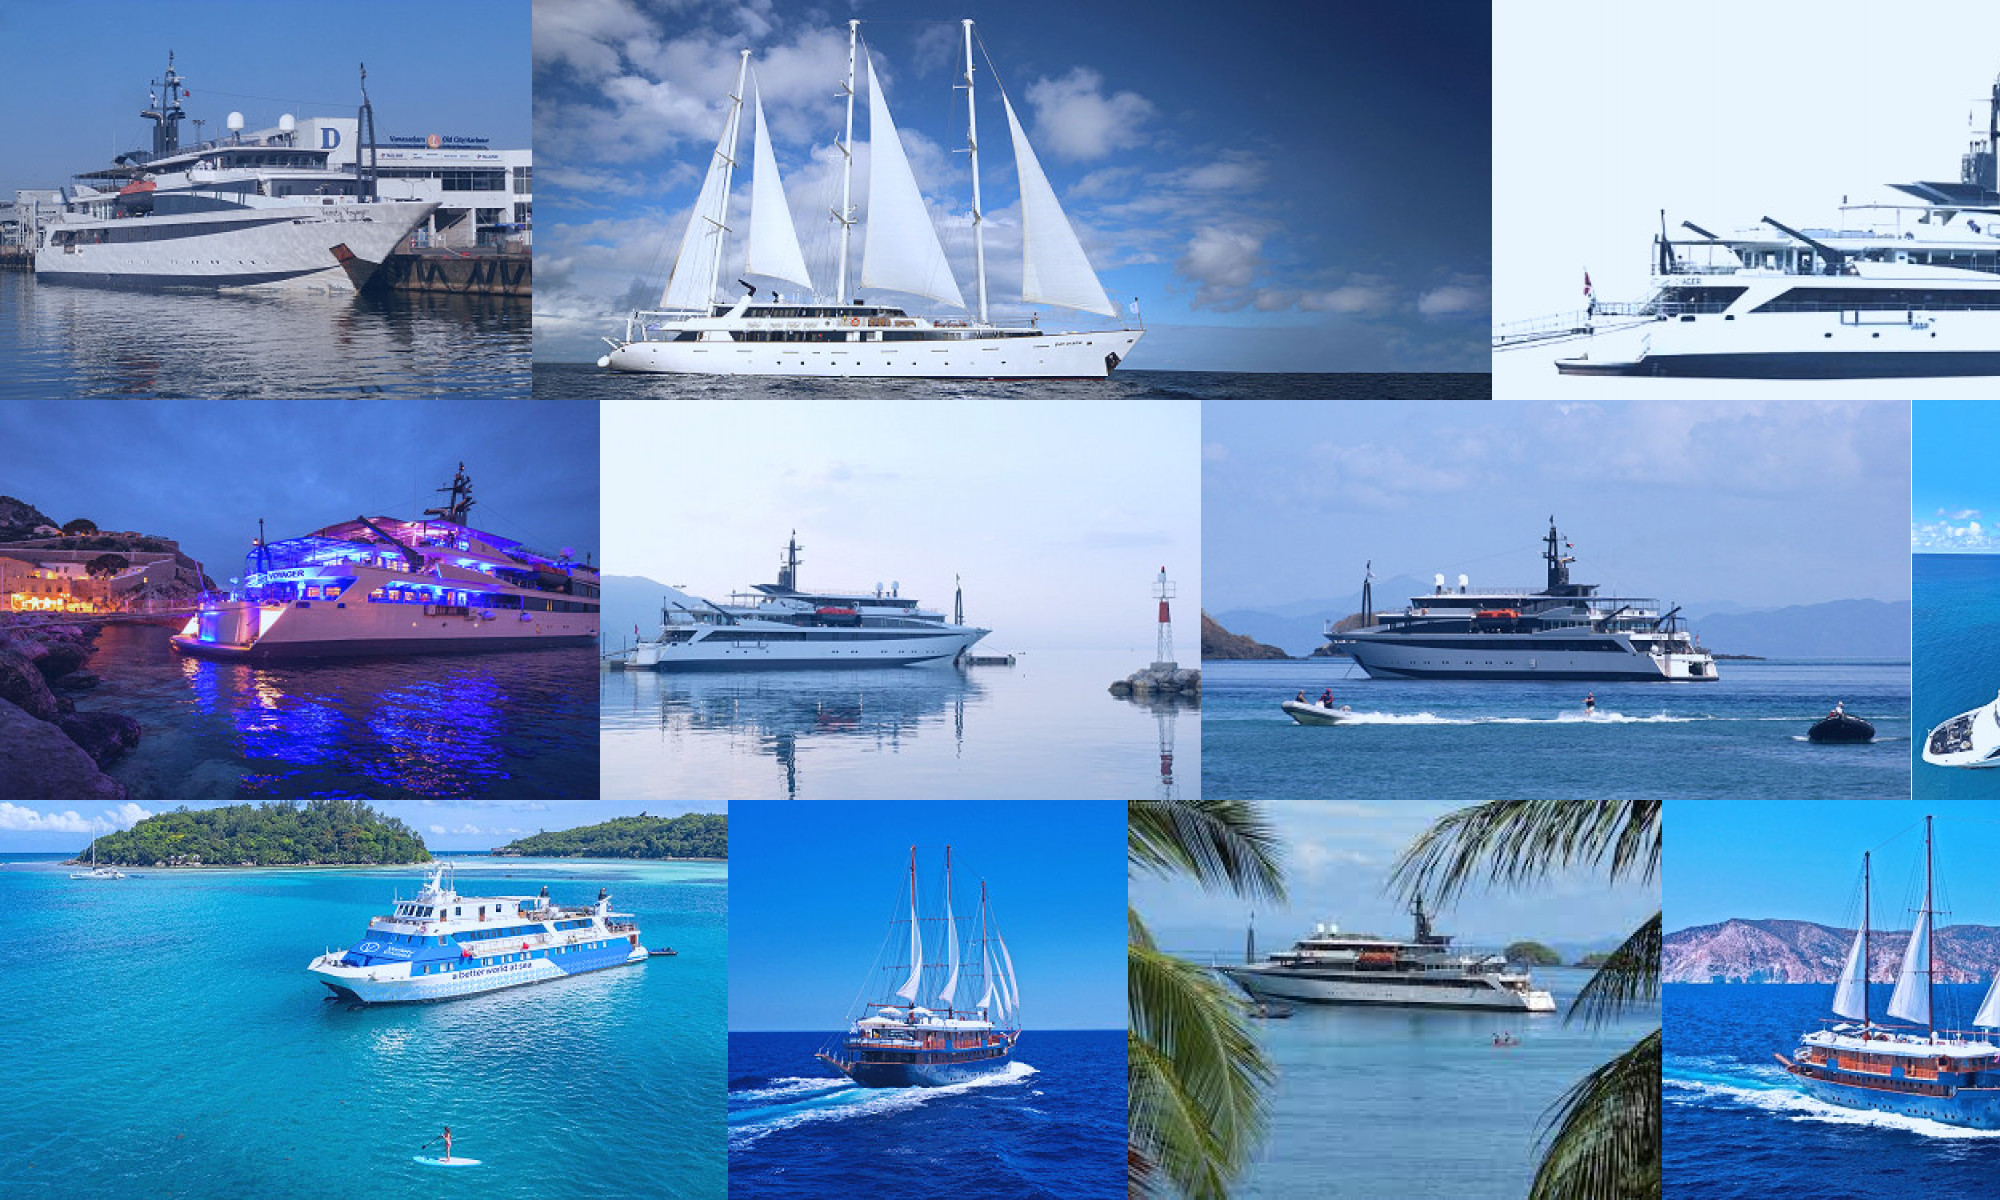 variety cruises